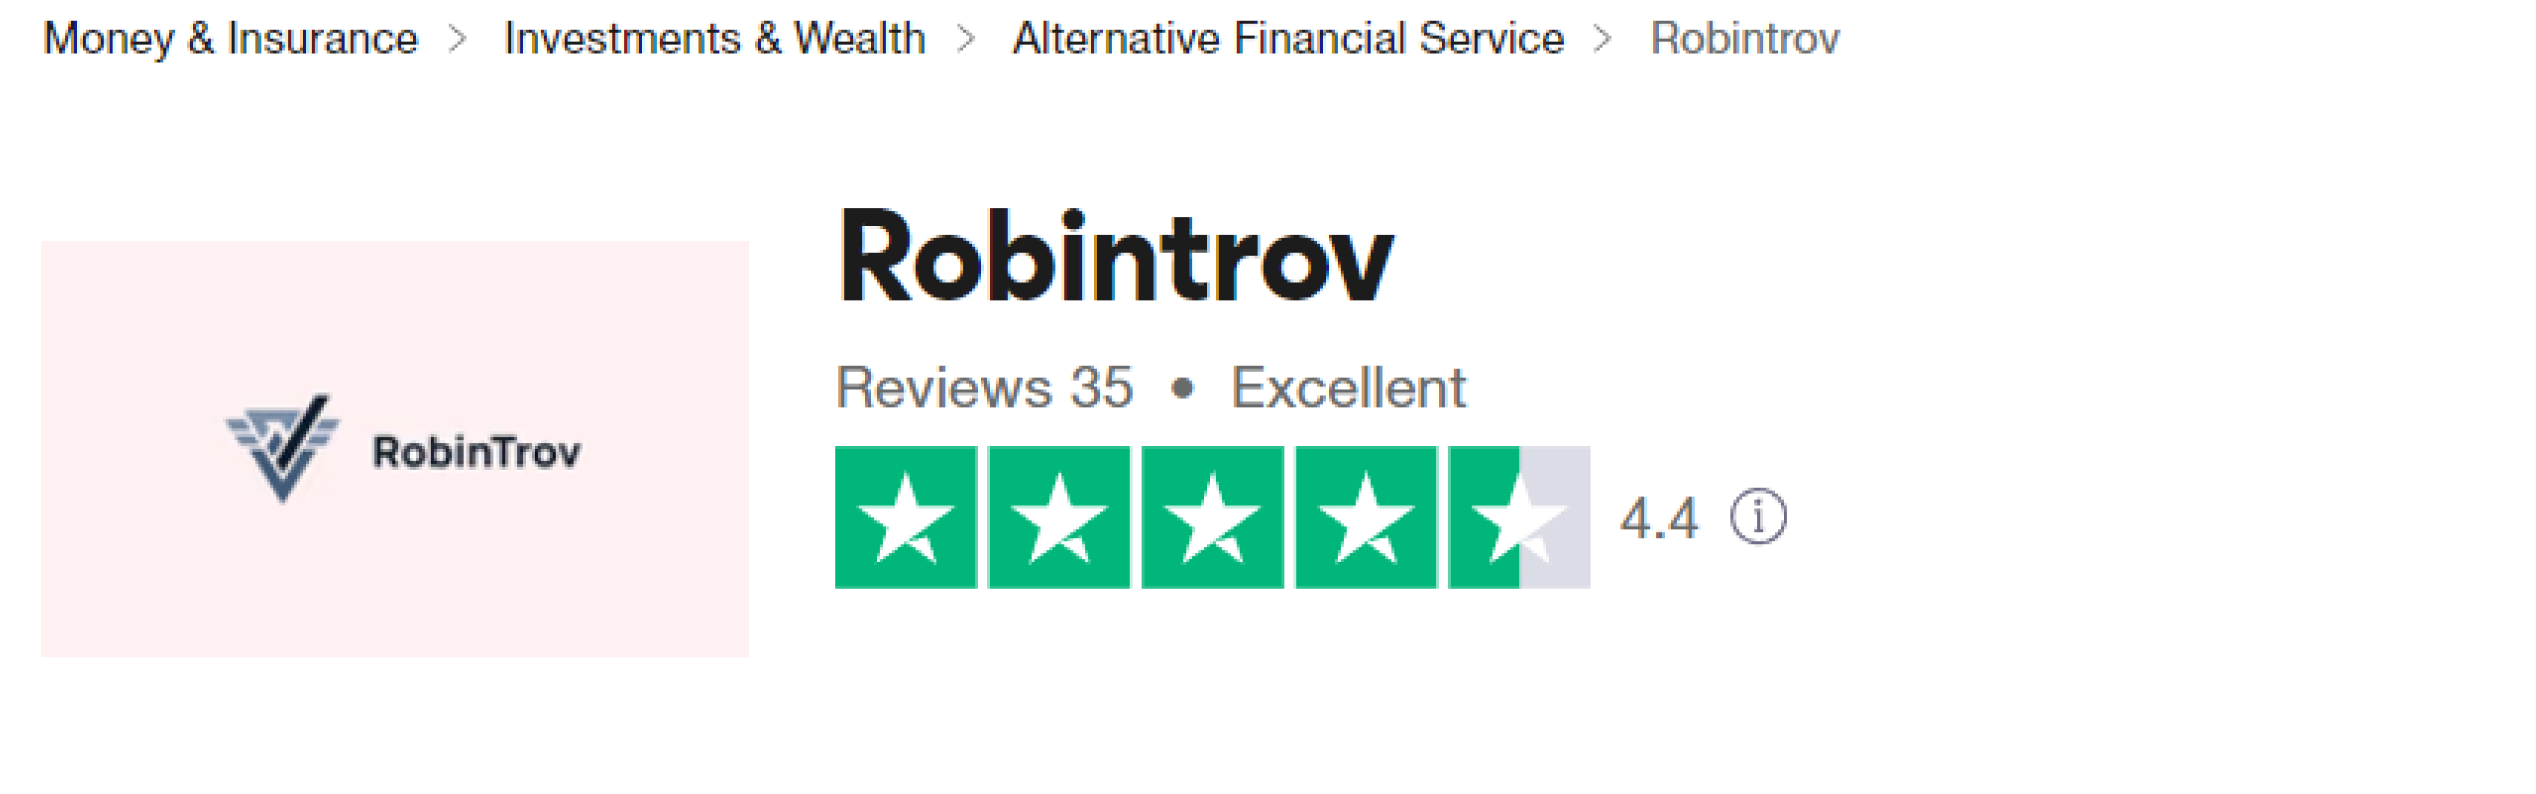 RobinTrov.com reviews trustpilot